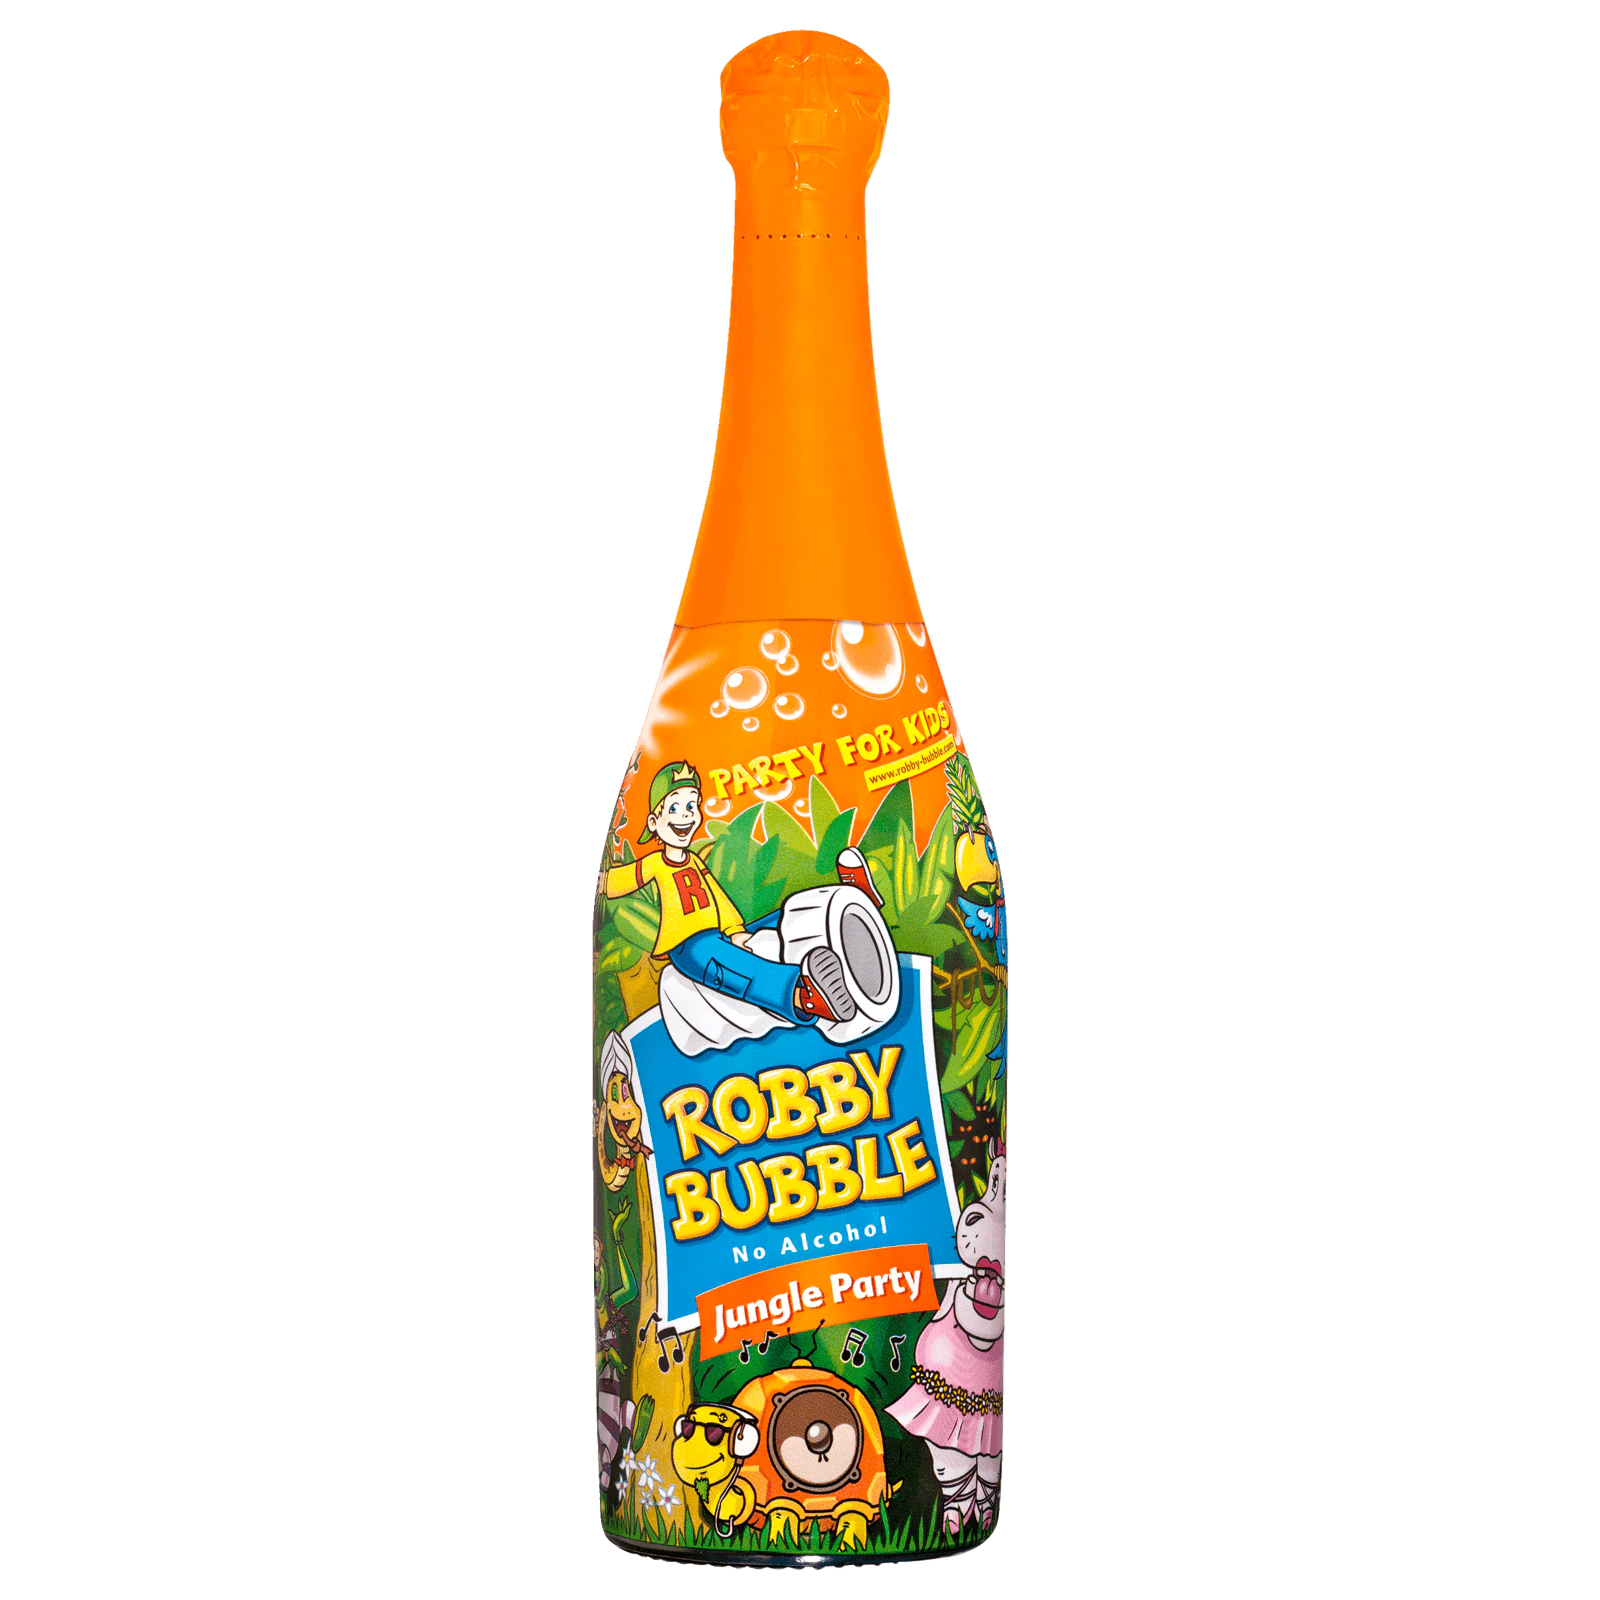 Robby Bubble Jungle Party alkoholfrei 0,75l bei REWE online bestellen!